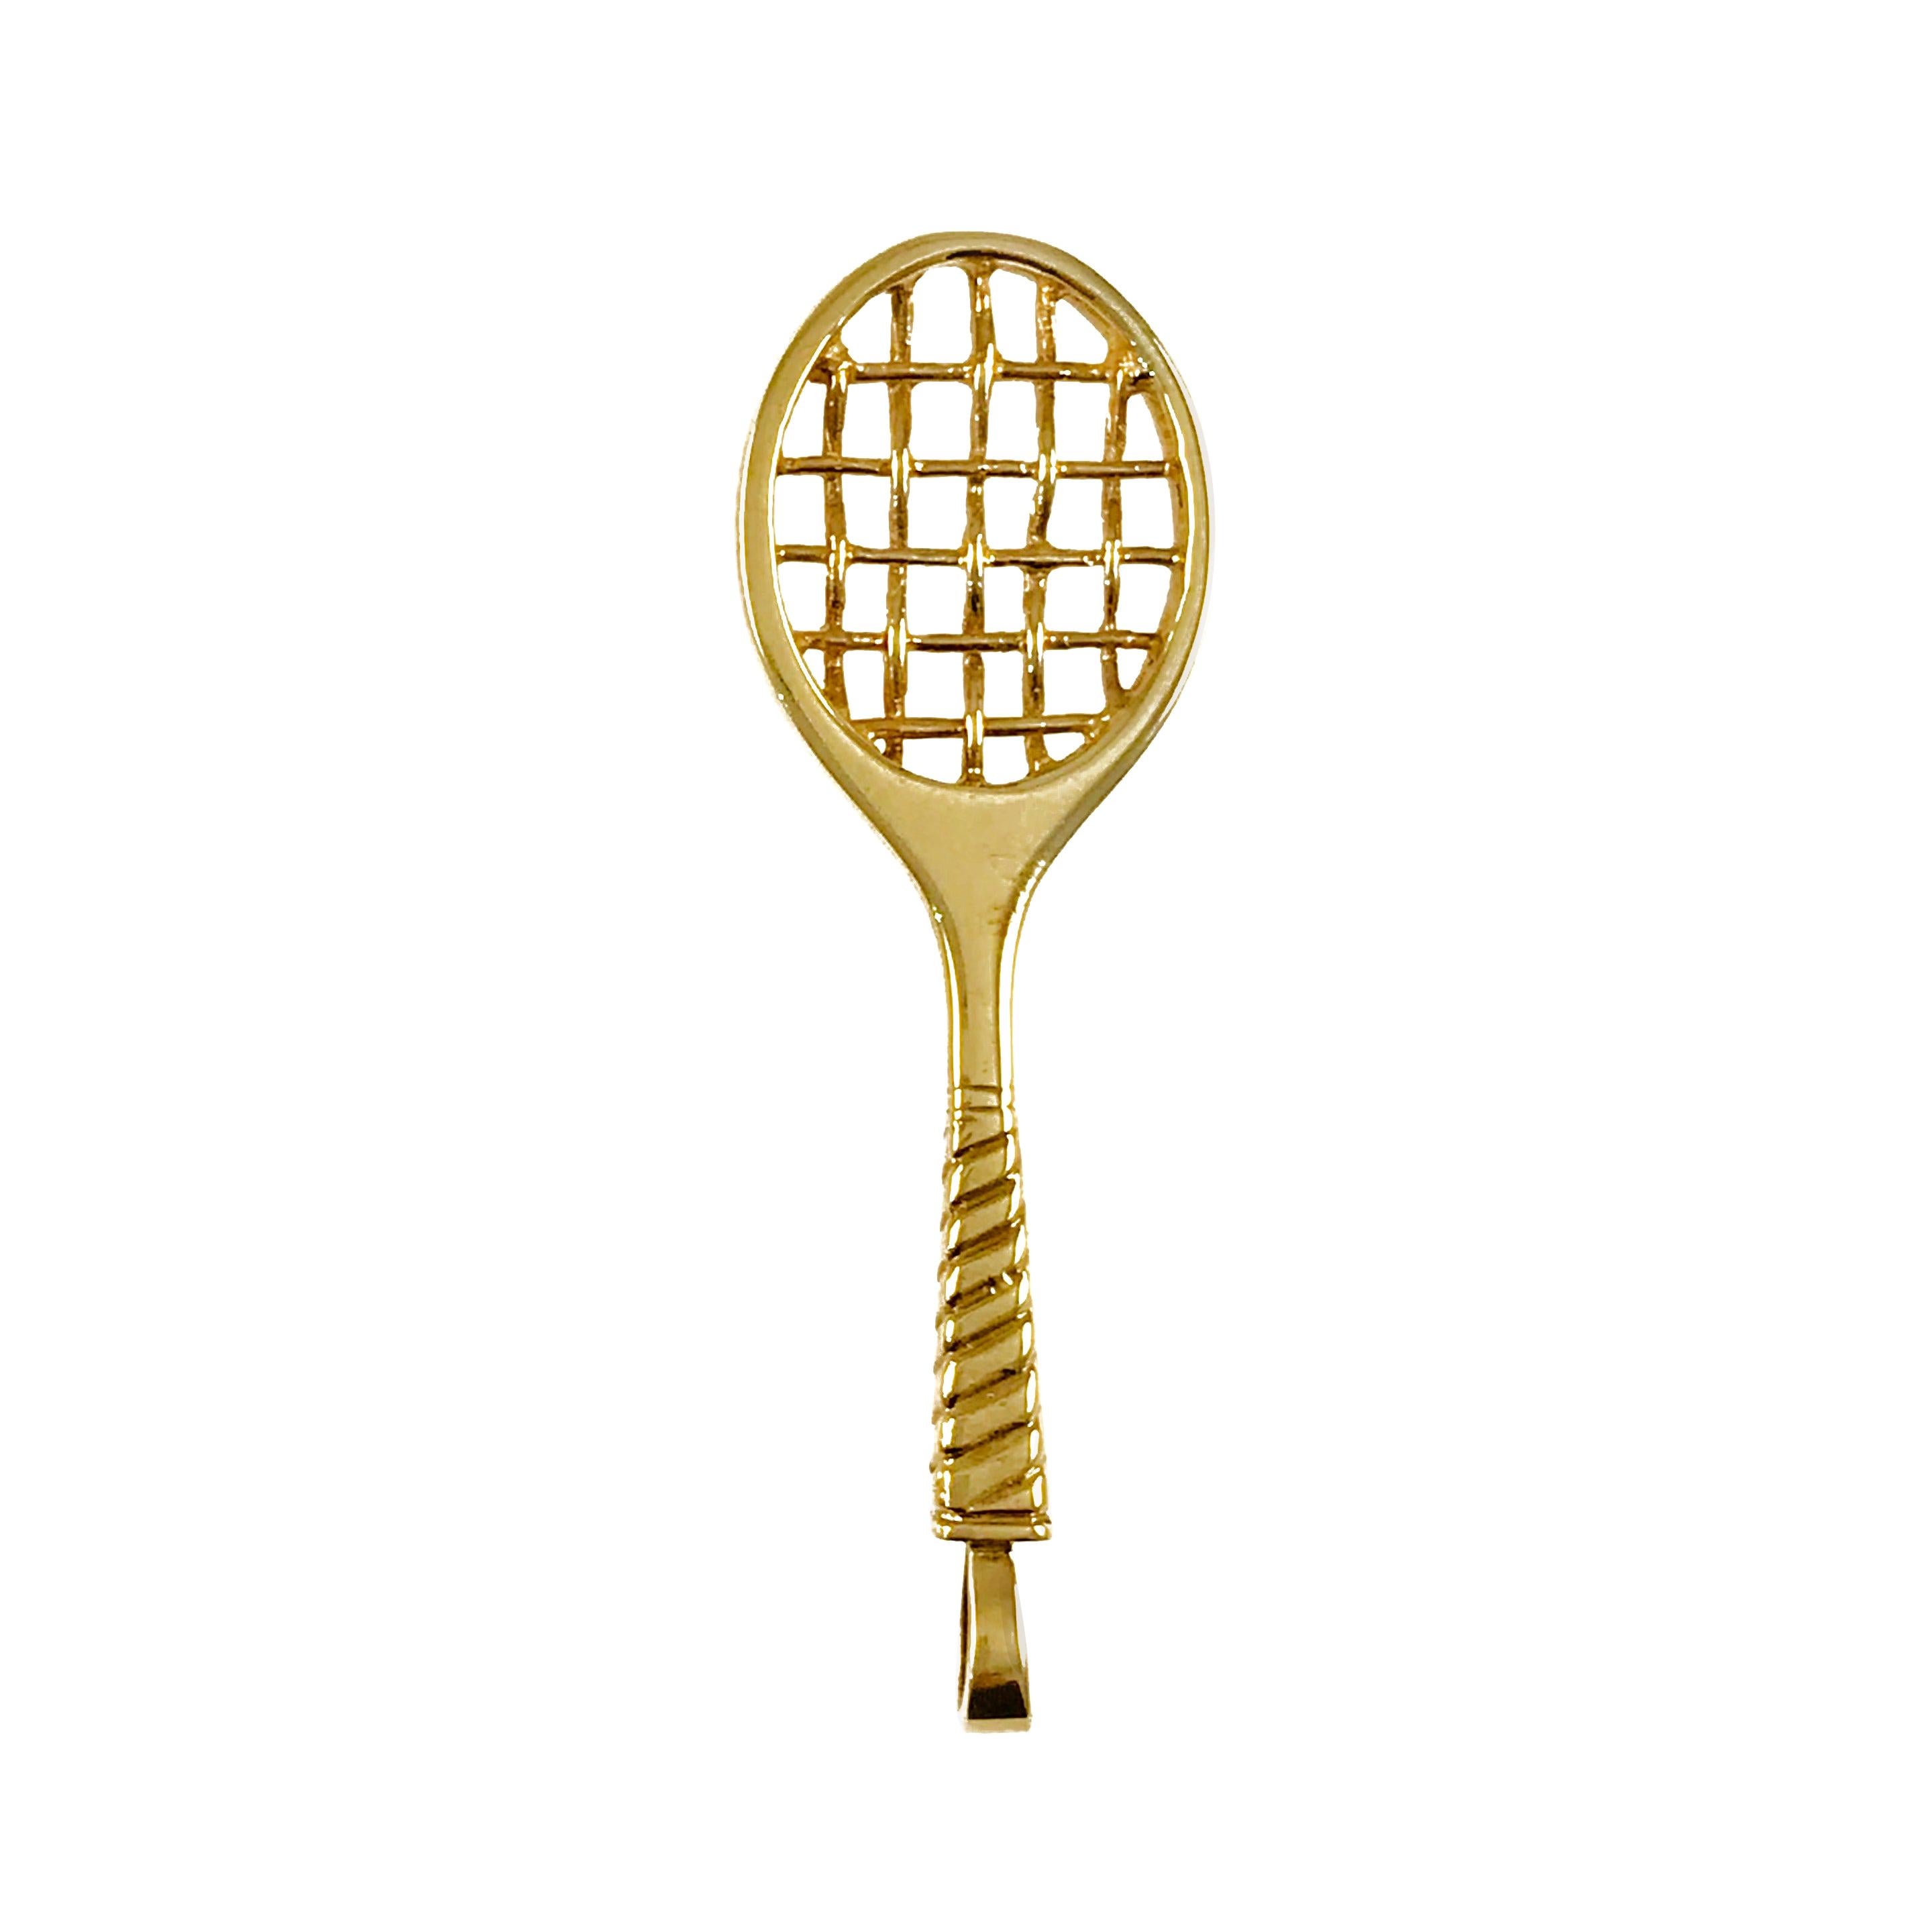 Incogem 14k Gold Racket Pendant